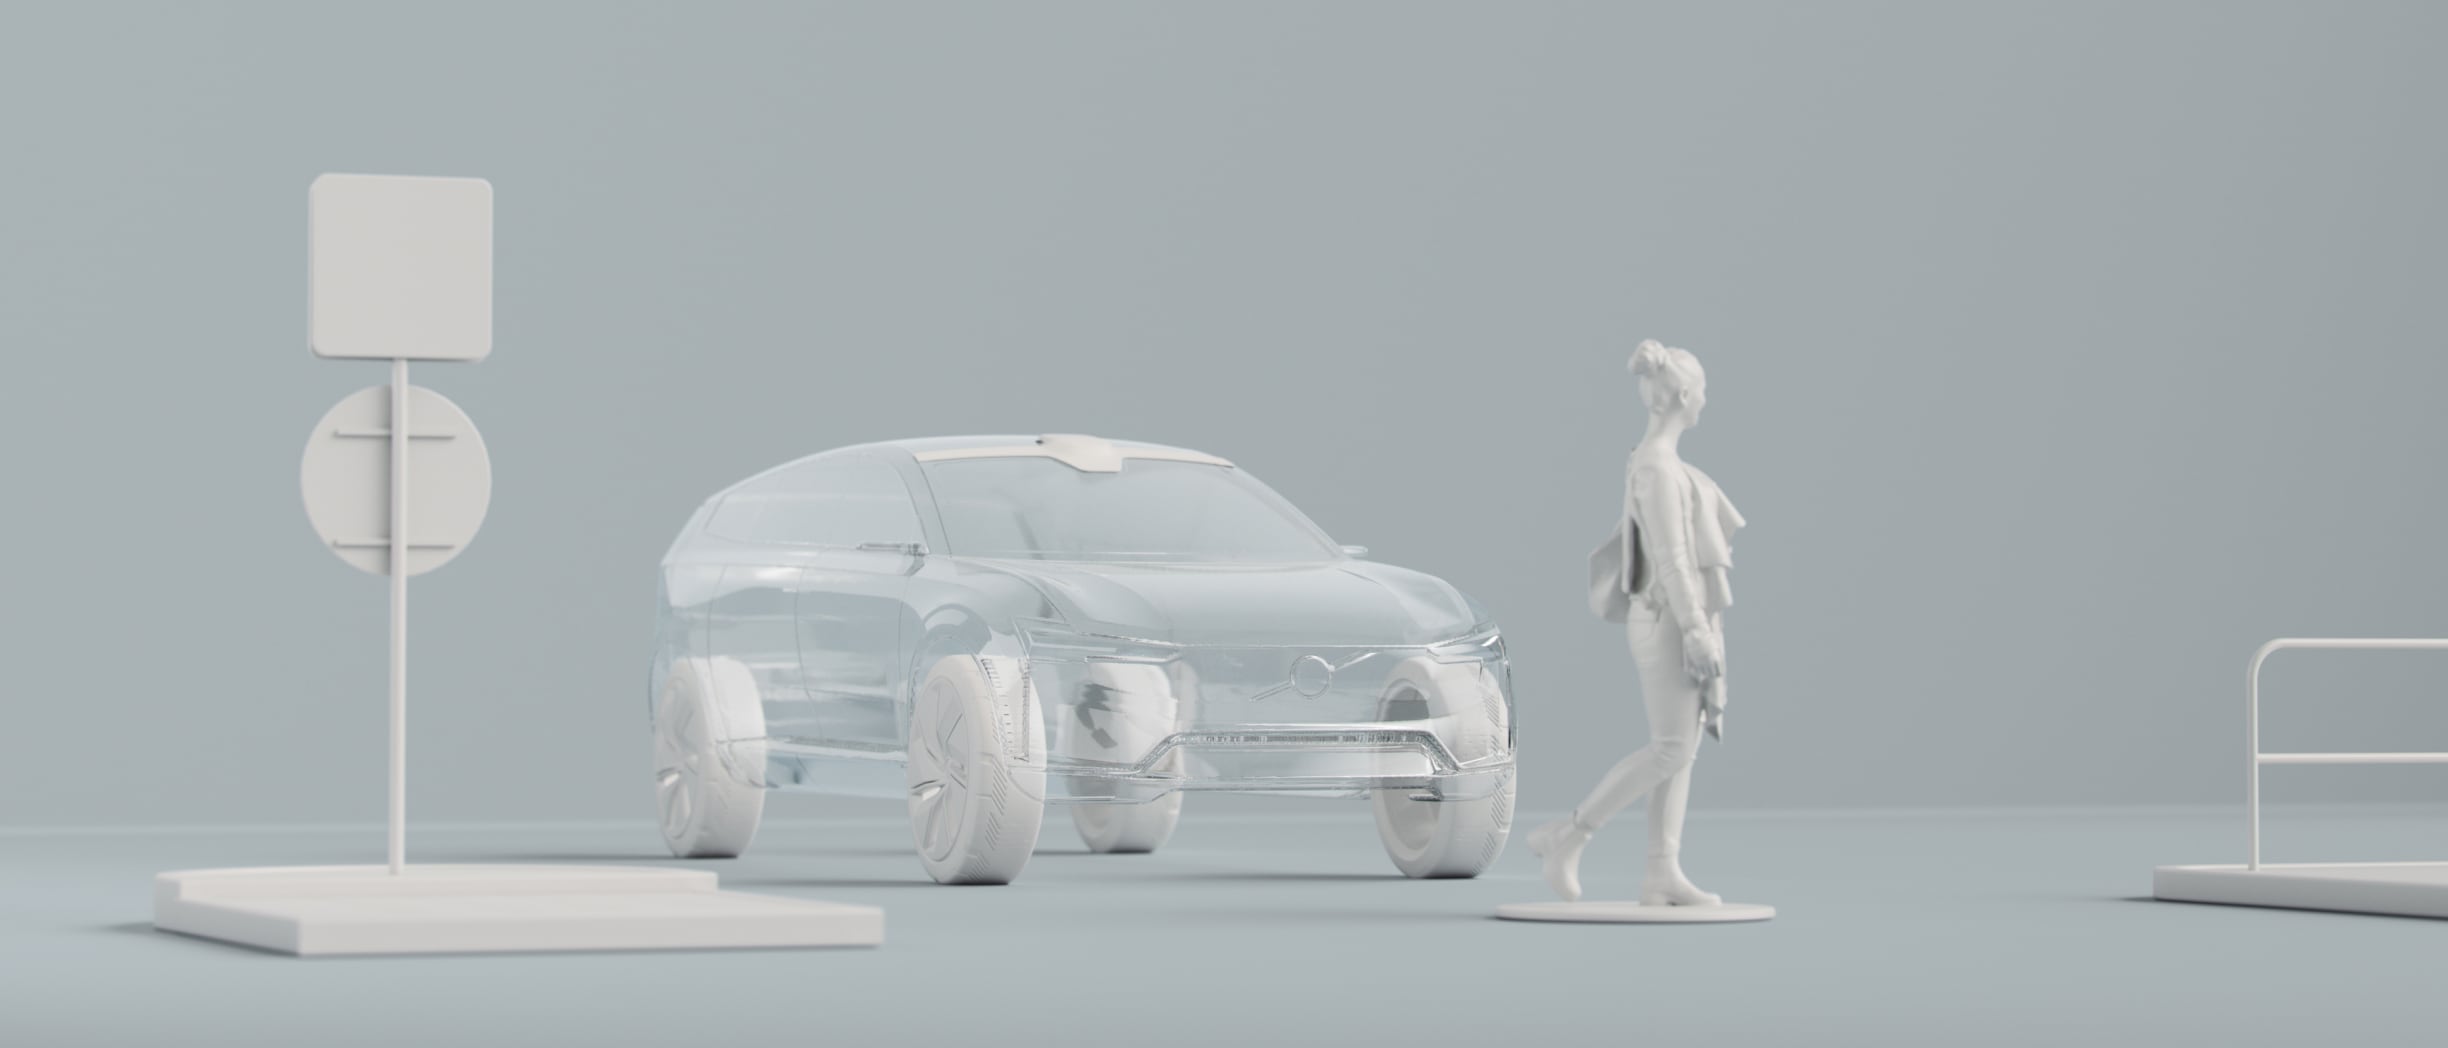 Representación digital de la silueta de un coche, una persona y otros objetos.